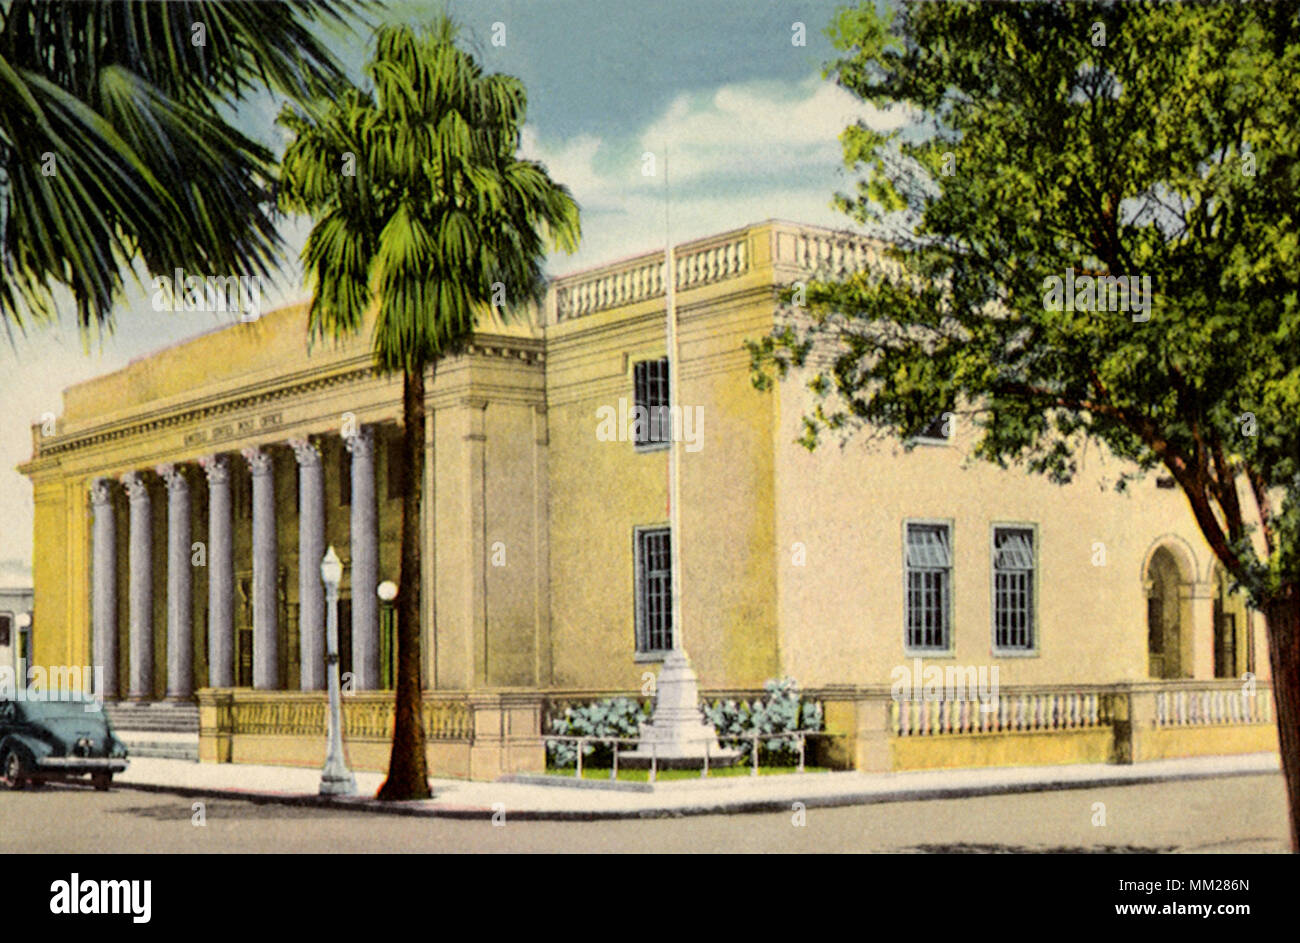 Bureau de poste. Sarasota. 1940 Banque D'Images